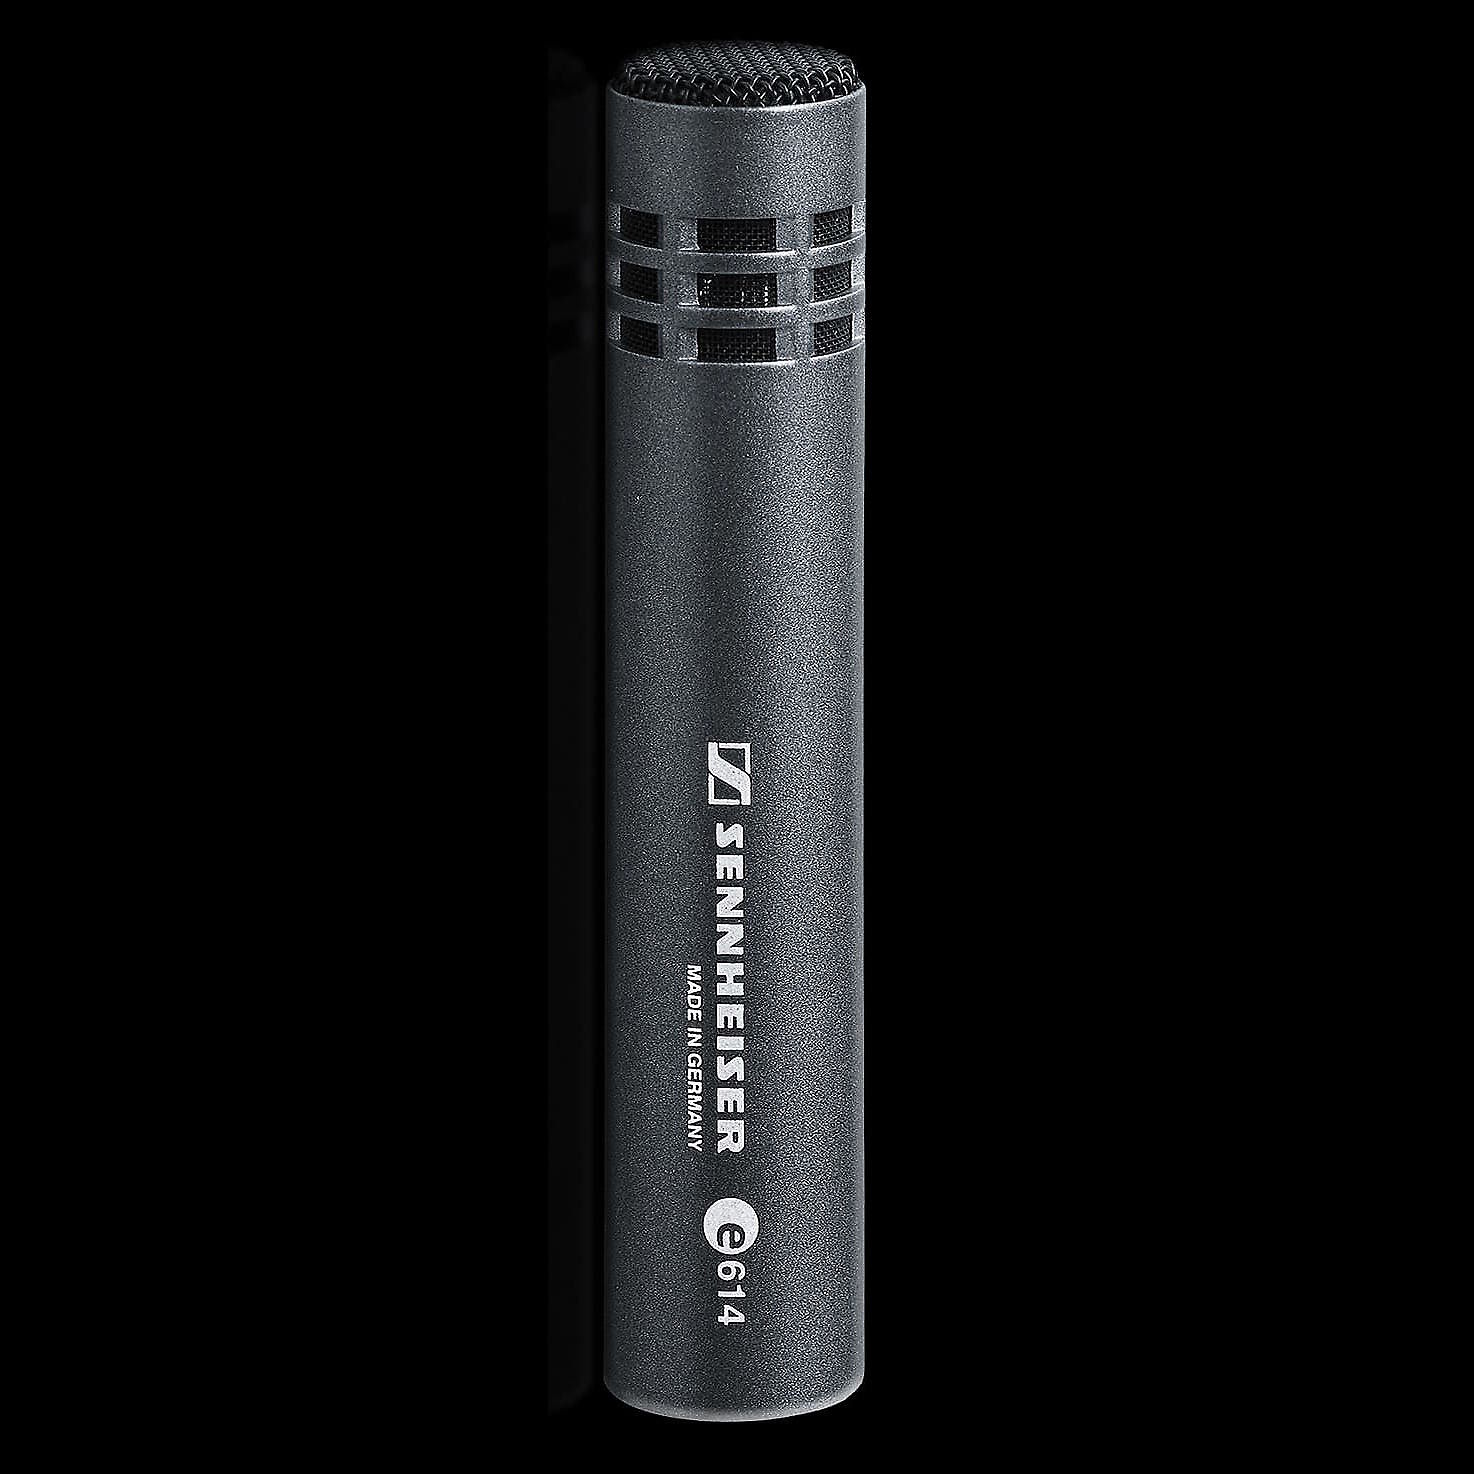 Sennheiser e614 Supercardioid Small Diaphragm Condenser Microphone | Reverb